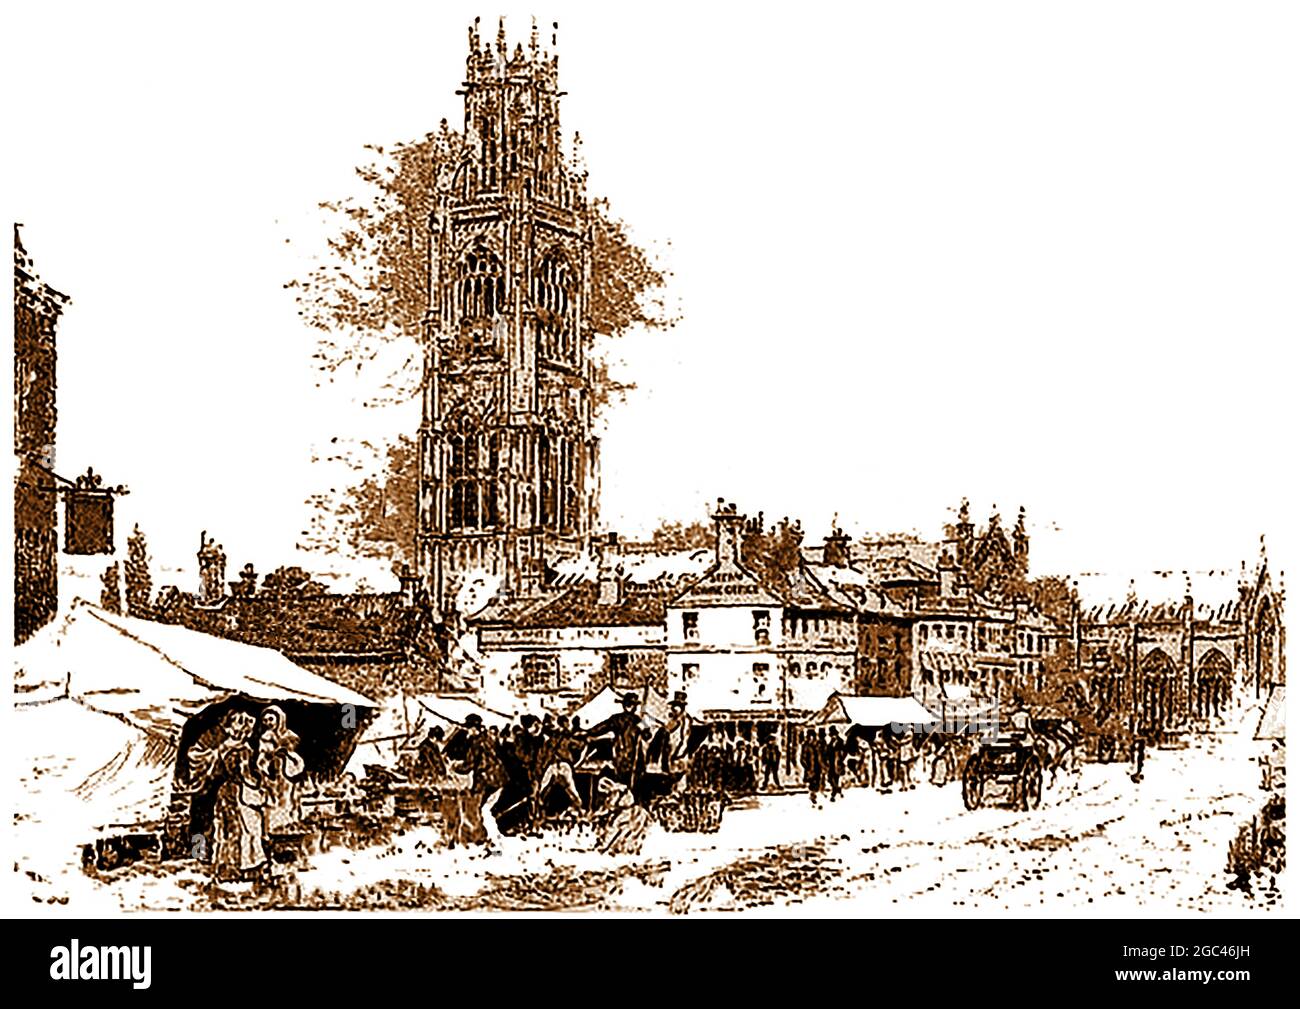 Lincoln Market - der Marktplatz im Jahr 1890 in Boston, Lincolnshire, England mit dem Angel Inn und dem Turm der St. Botolph's Church (bekannt als Boston Stump) in der Mitte des Bildes. Boston Stump, hat den höchsten Turm einer Pfarrkirche im Land, die keinen Turm enthält. St. Botolph war ein sächsischer Missionar aus dem 7. Jahrhundert, der vor Ort lebte und der Stadt seinen Namen gab (Botolph's Stone) Stockfoto